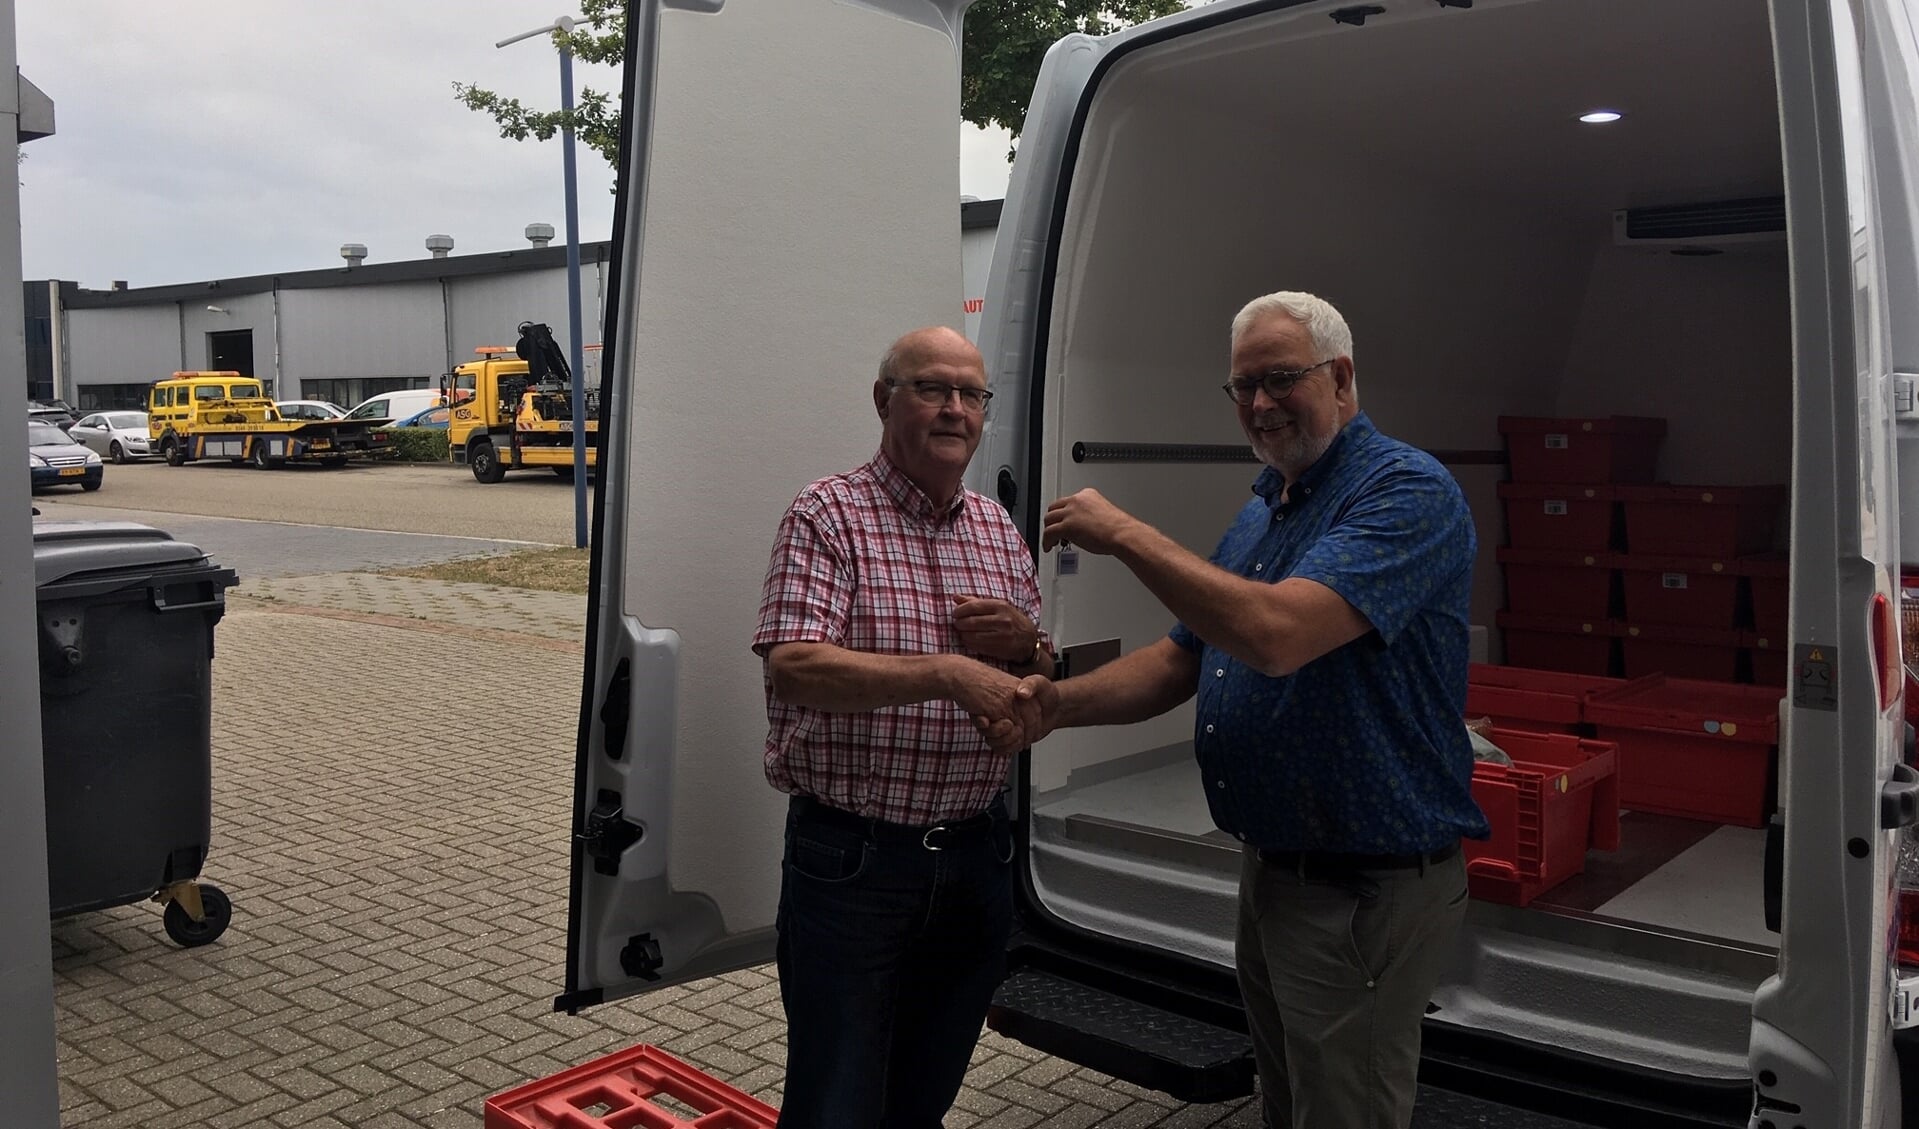 Voorzitter Chris Blaauboer neemt de sleutel van de nieuwe bus in ontvangst van Hans Tijdink. Foto: Barbara Pavinati